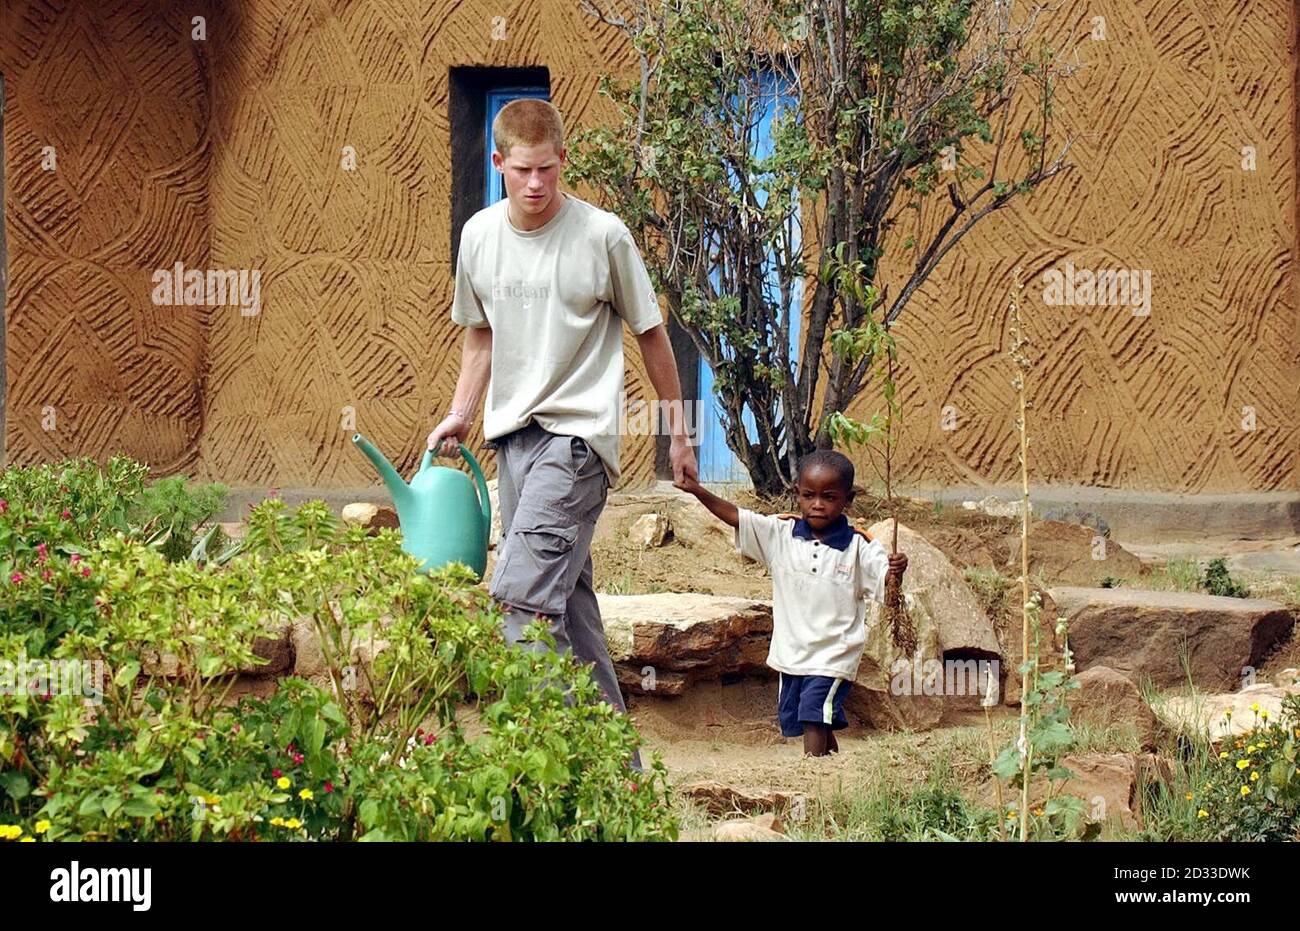 Prinz Harry, der jüngere Sohn des britischen Prinzen Charles, führt die junge Waise Mutsu Potsdamer, 4, an der Hand, um einen Pfirsichbaum zusammen im Mants'ase Kinderheim für Waisenkinder in der Nähe von Mohale's Hoek, etwa 60 Meilen südlich von Maseru in Lesotho, zu Pflanzen. Der 19-jährige Prinz ist im Rahmen seines GAP-Jahres seit drei Wochen im südafrikanischen Land und hat auch AIDS-Opfer und TB-Betroffene getroffen, bei anderen Gemeinschaftsprojekten mitgeholfen und einige Besichtigungen mitgemacht. Stockfoto